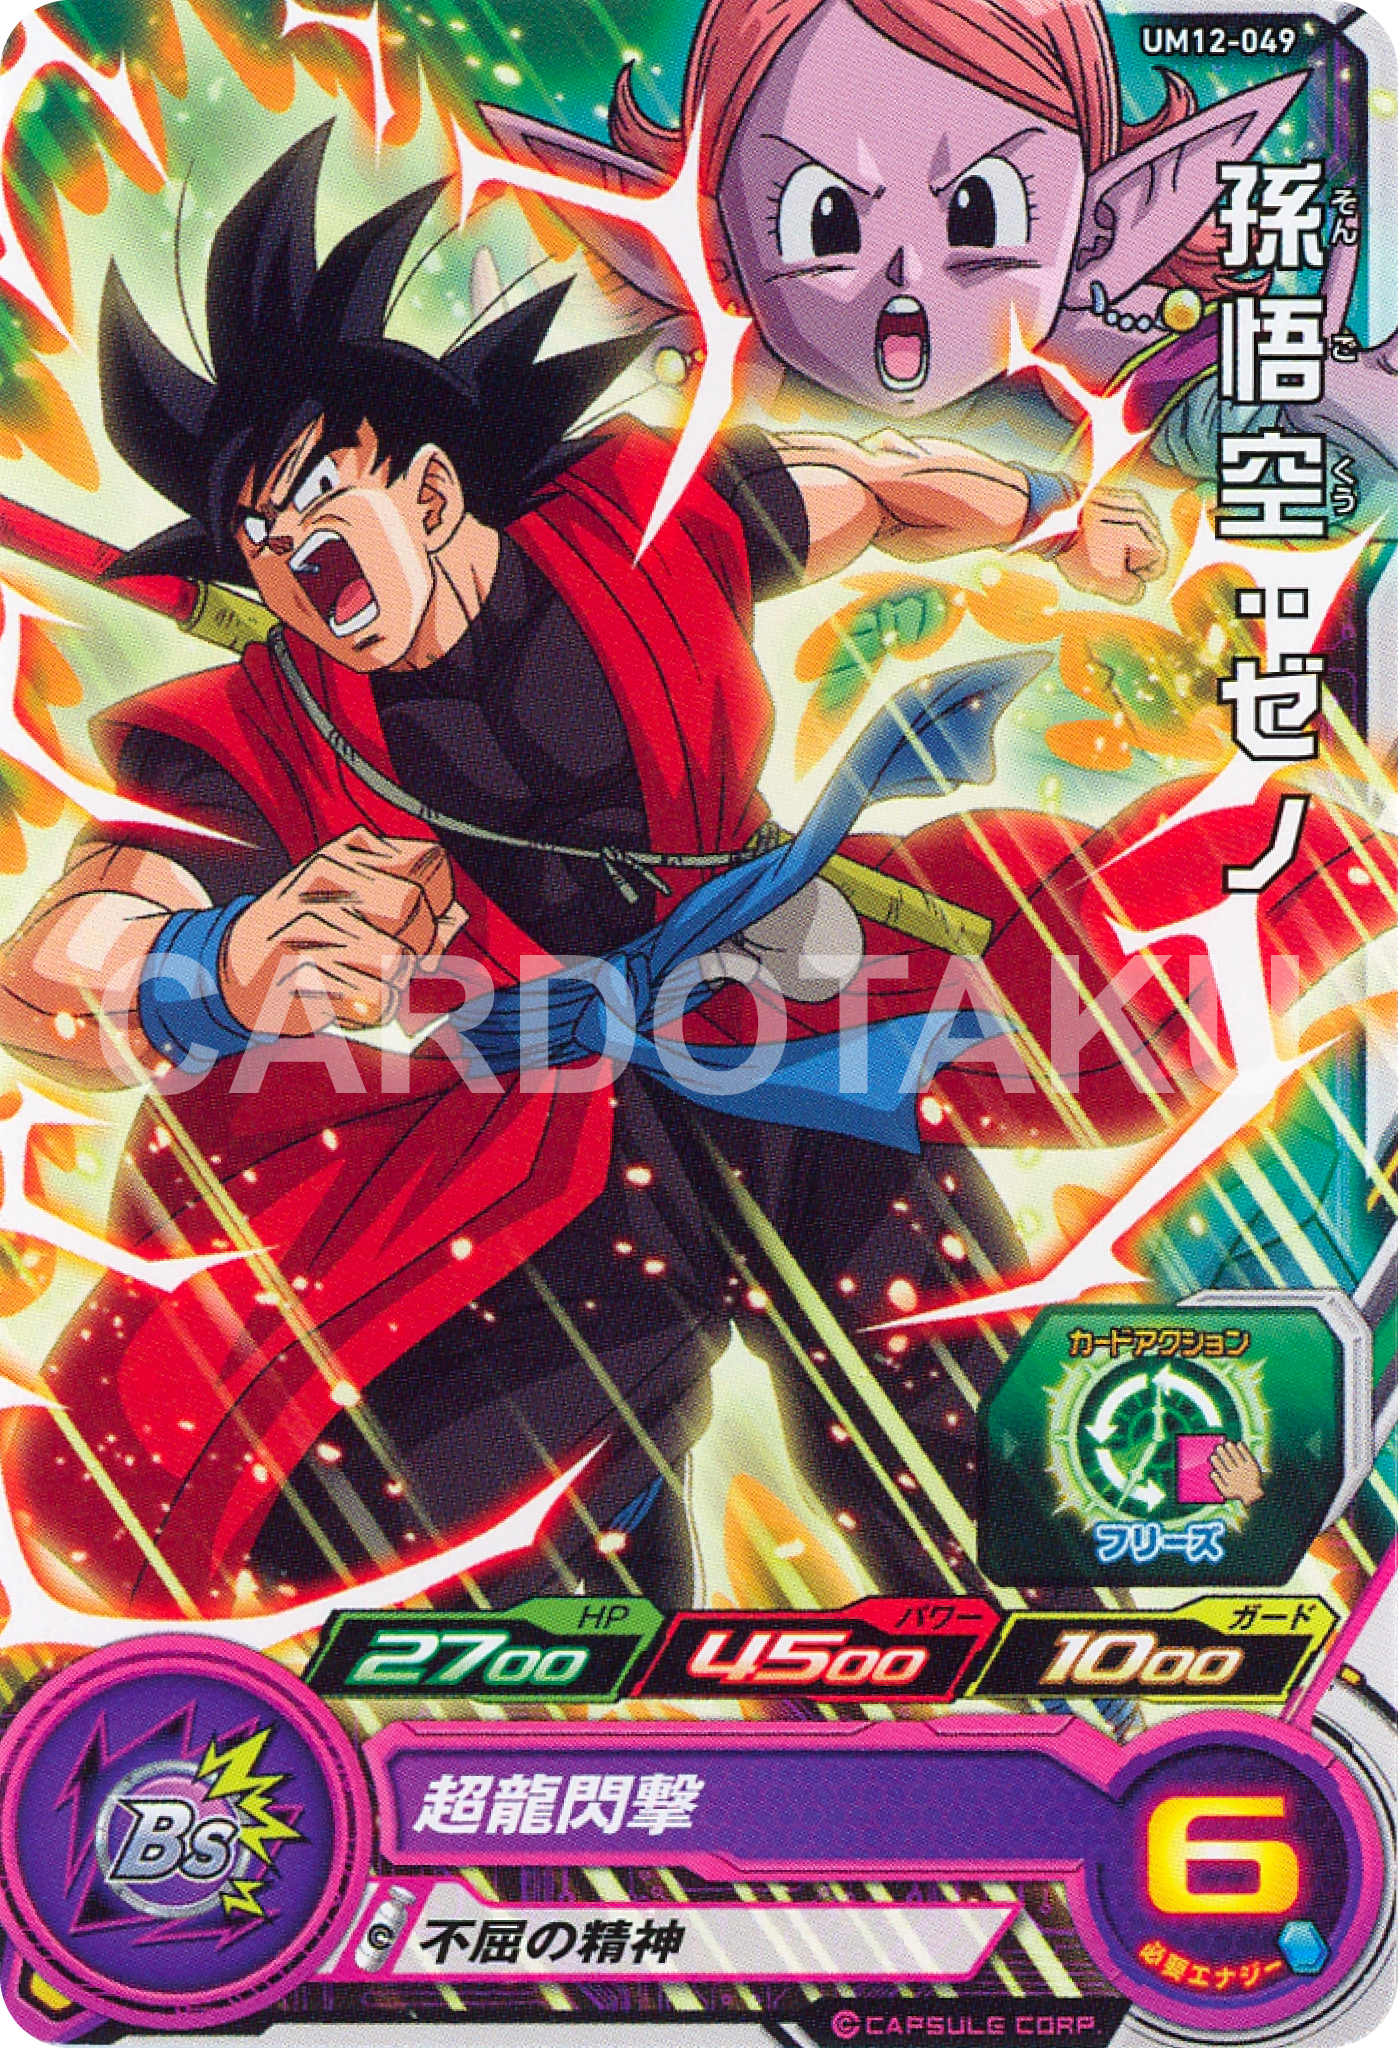 SUPER DRAGON BALL HEROES UM12-049 Common card Son Goku : Xeno